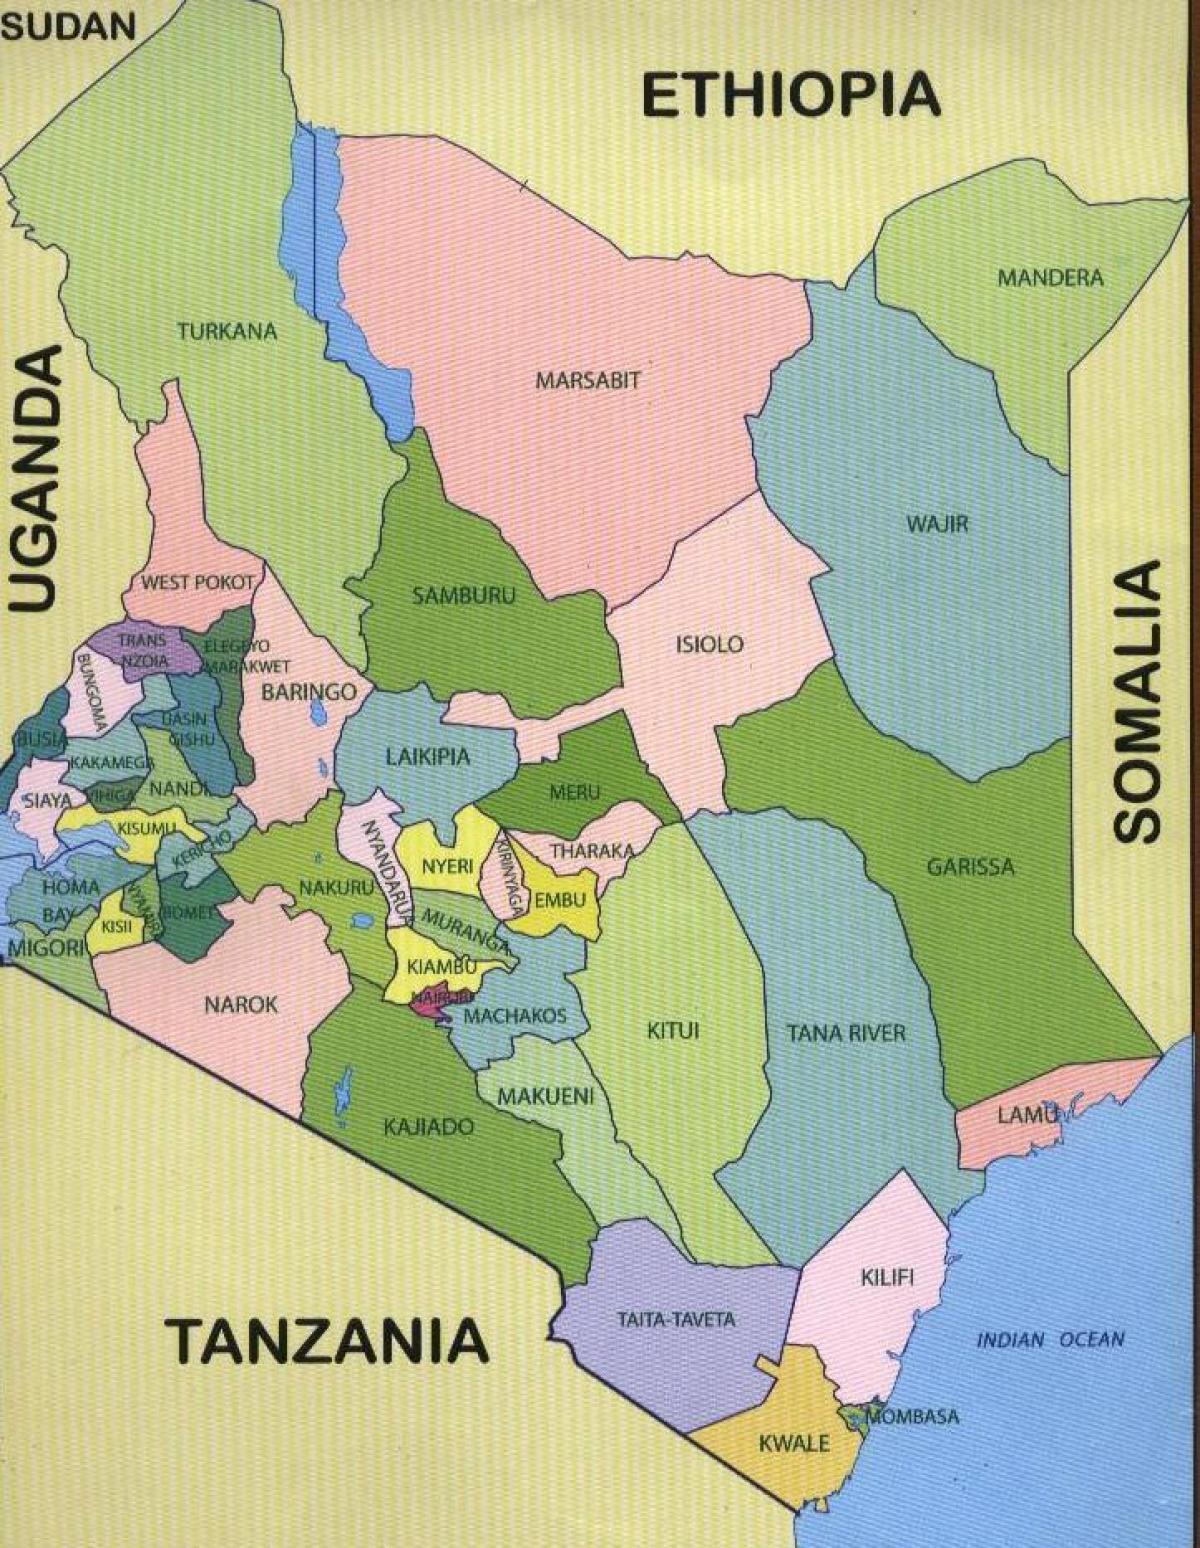 ახალი რუკა კენიაში ქვეყნების